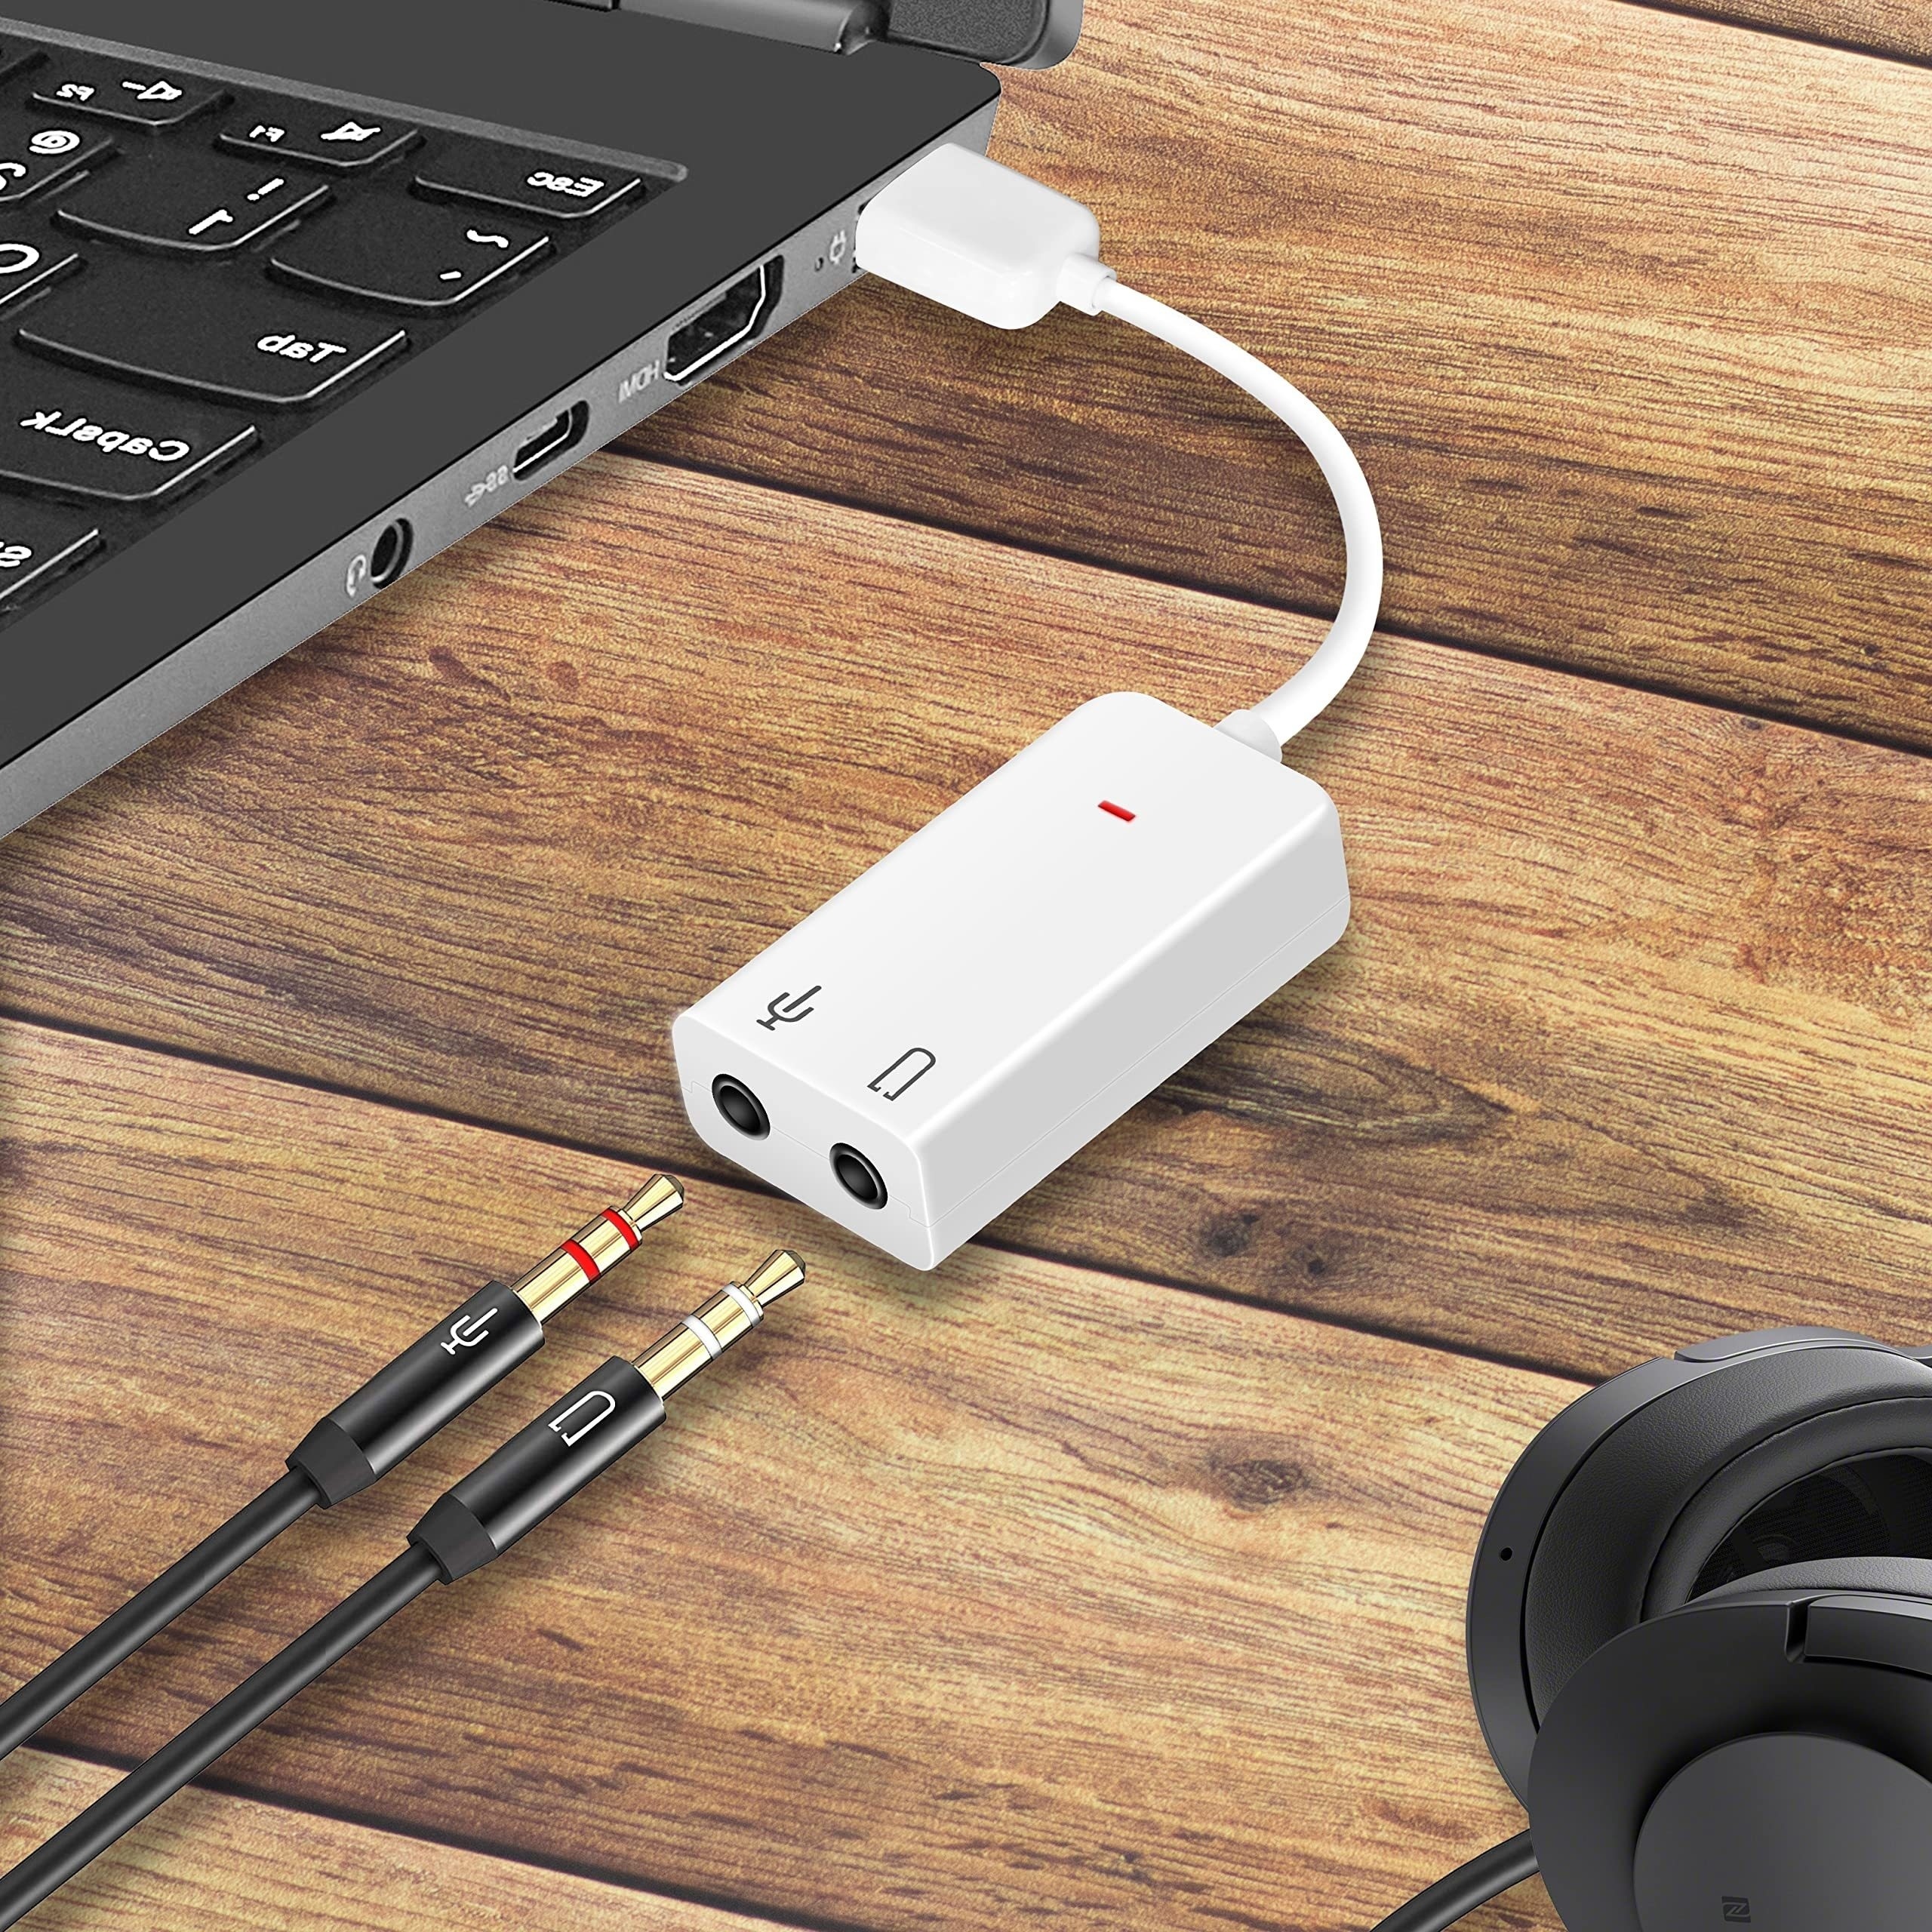 Externe USB Carte Son 7.1 Canaux Audio Adaptateur 3.5mm Casque MIC PC Bureau